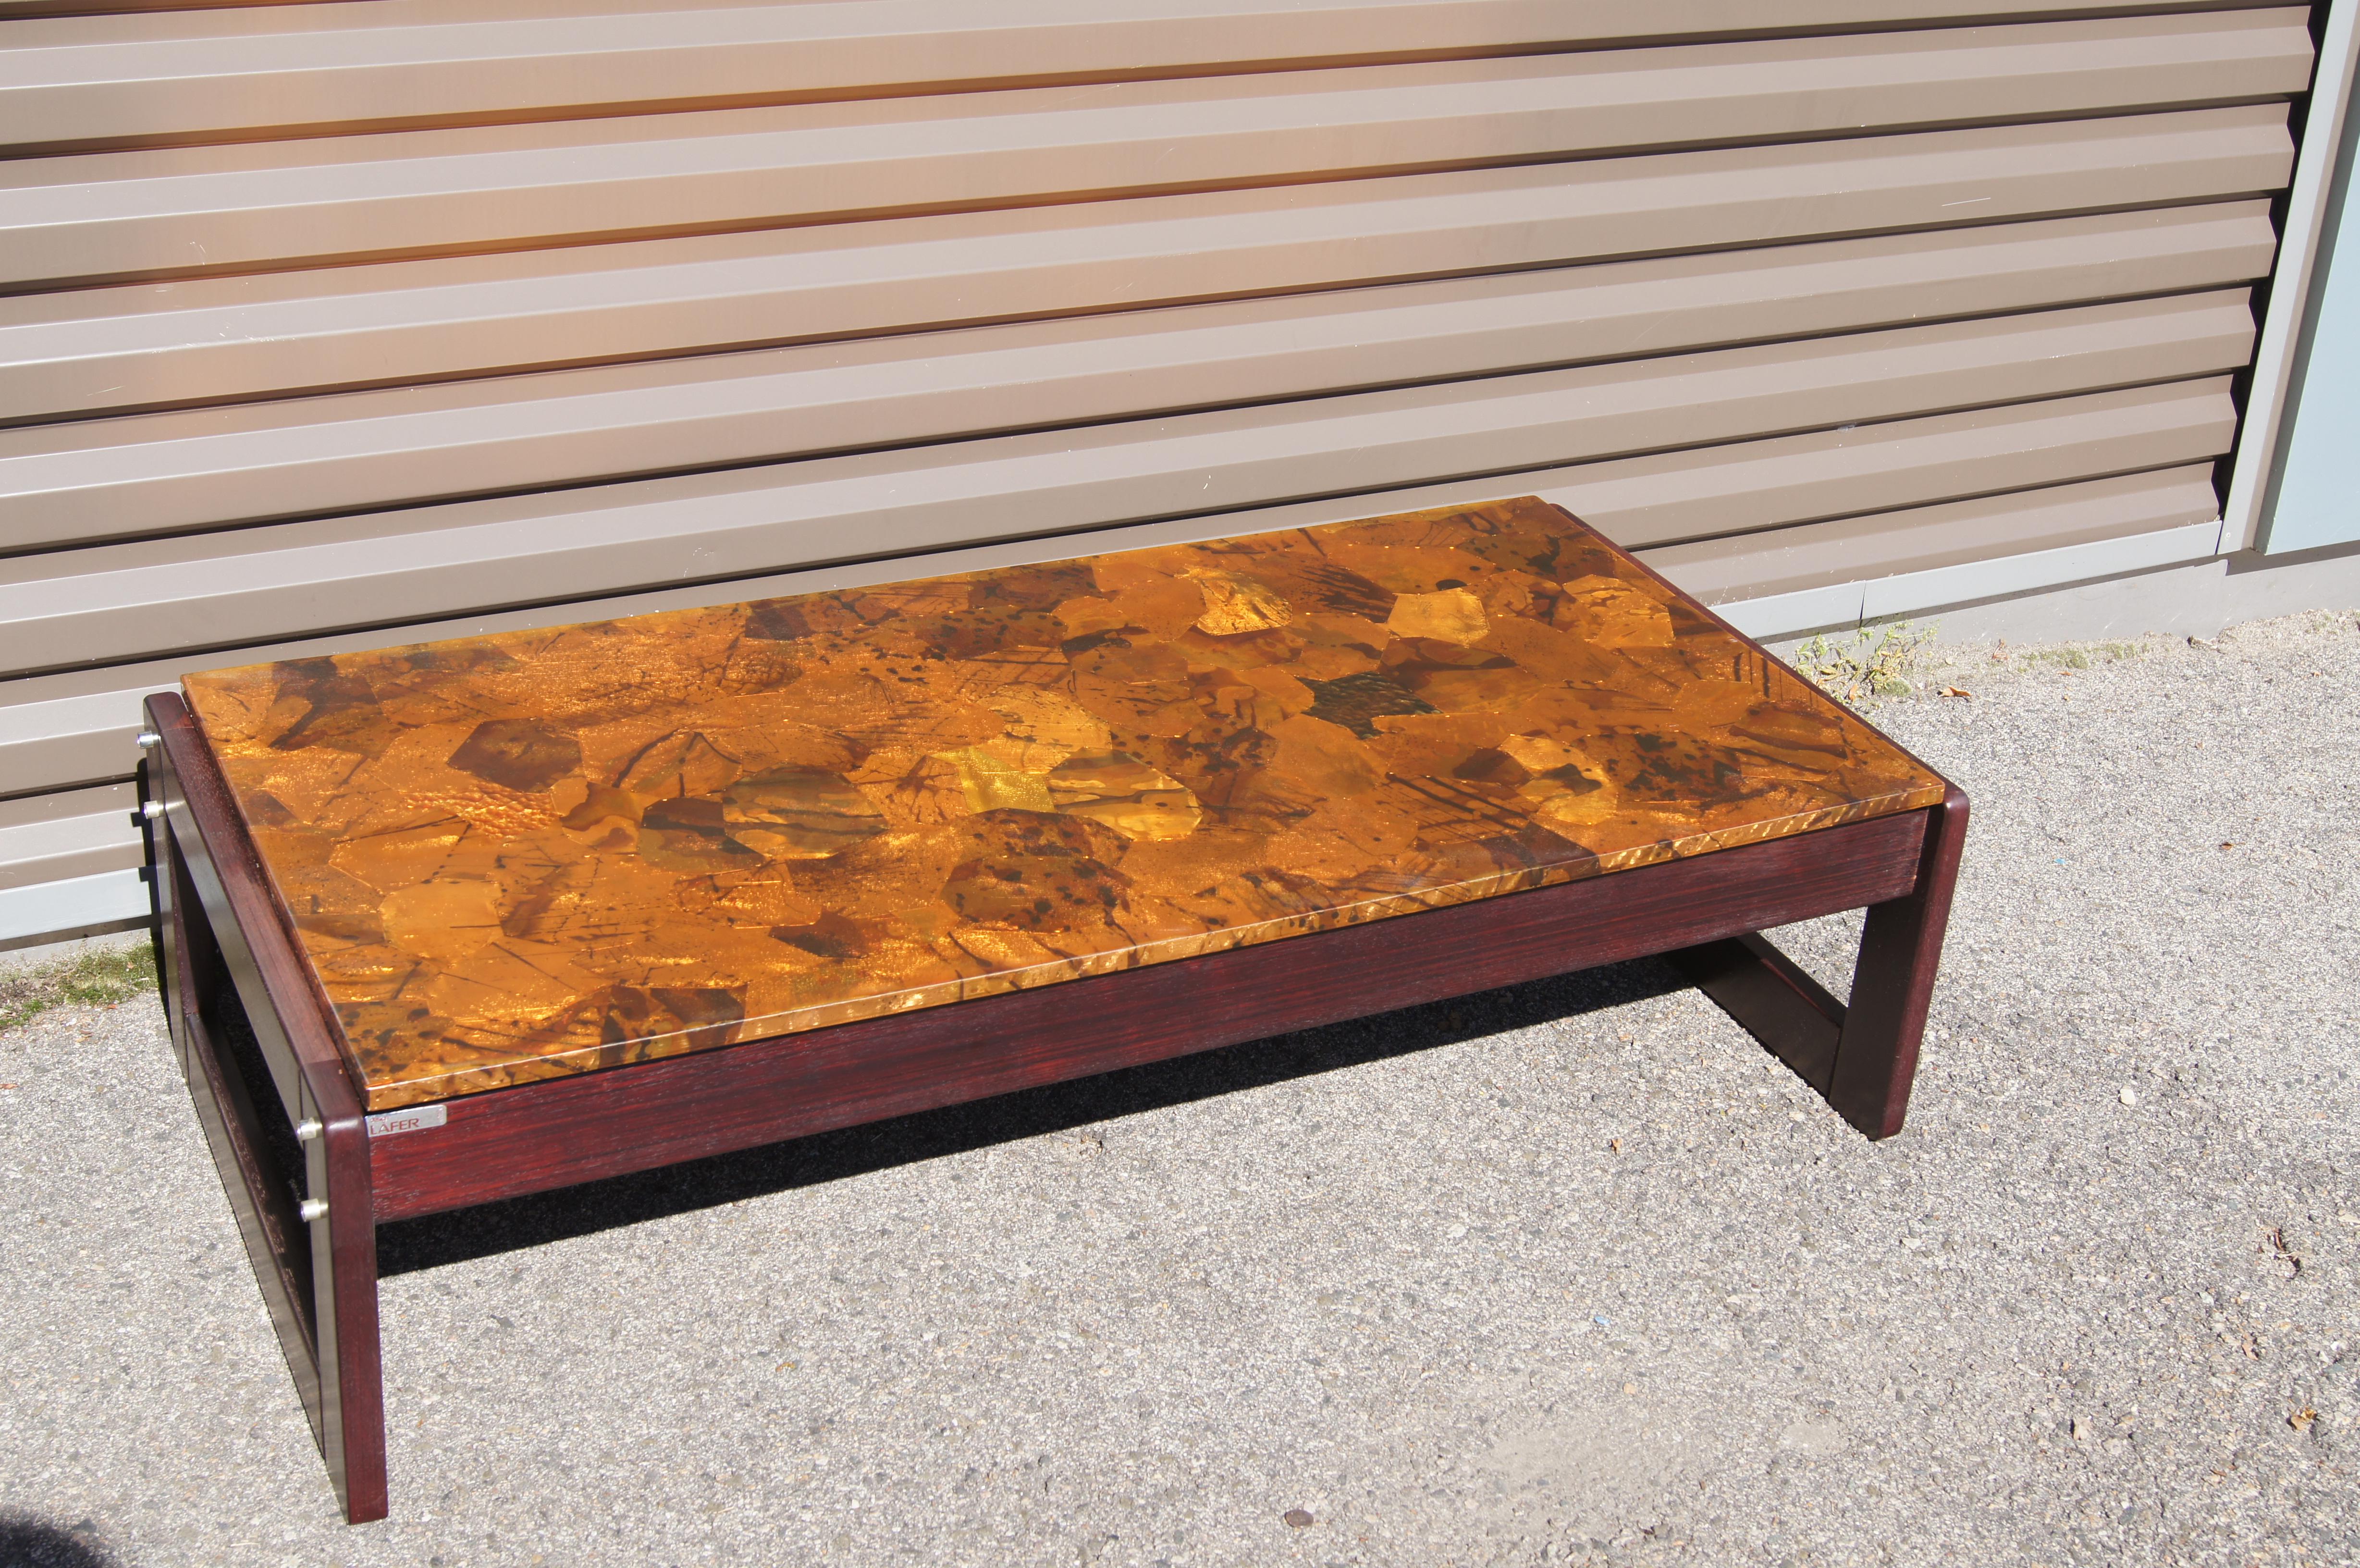 Conçue par le moderniste brésilien Percival Lafer, cette table basse en bois de rose jacaranda présente un cadre rectangulaire audacieux avec des ferrures apparentes. La partie supérieure est fabriquée en cuivre patchwork magnifiquement patiné.